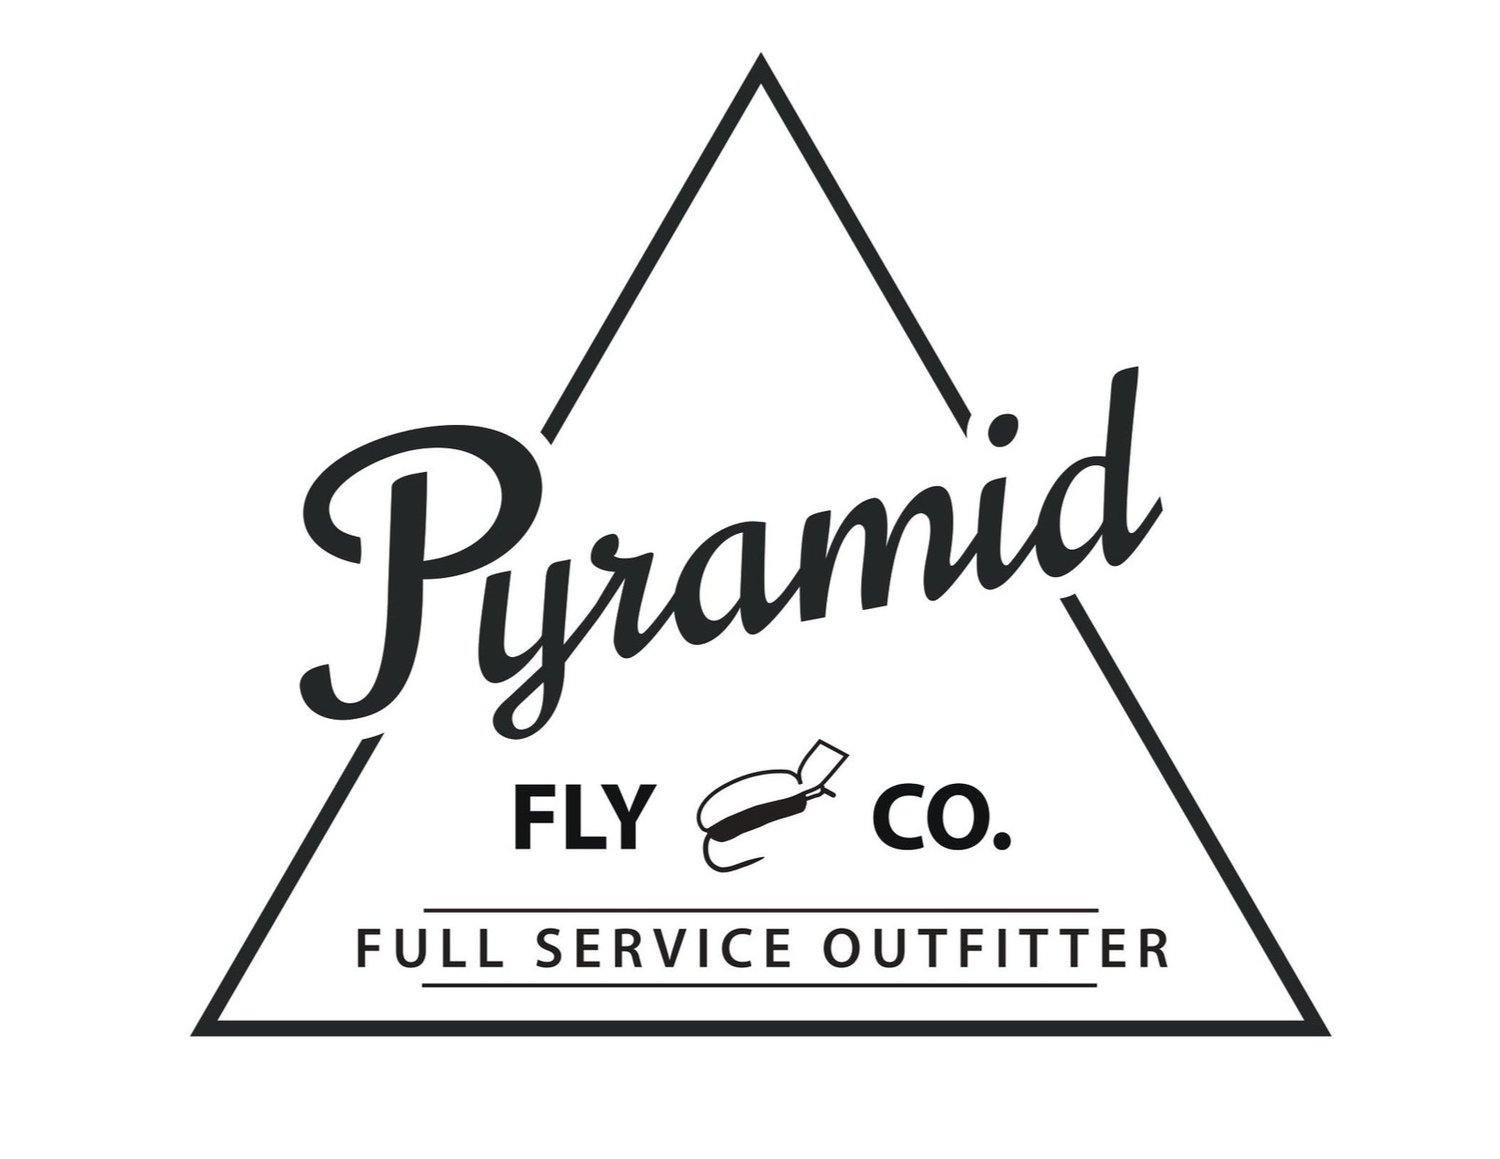 Pyramid Fly Co.